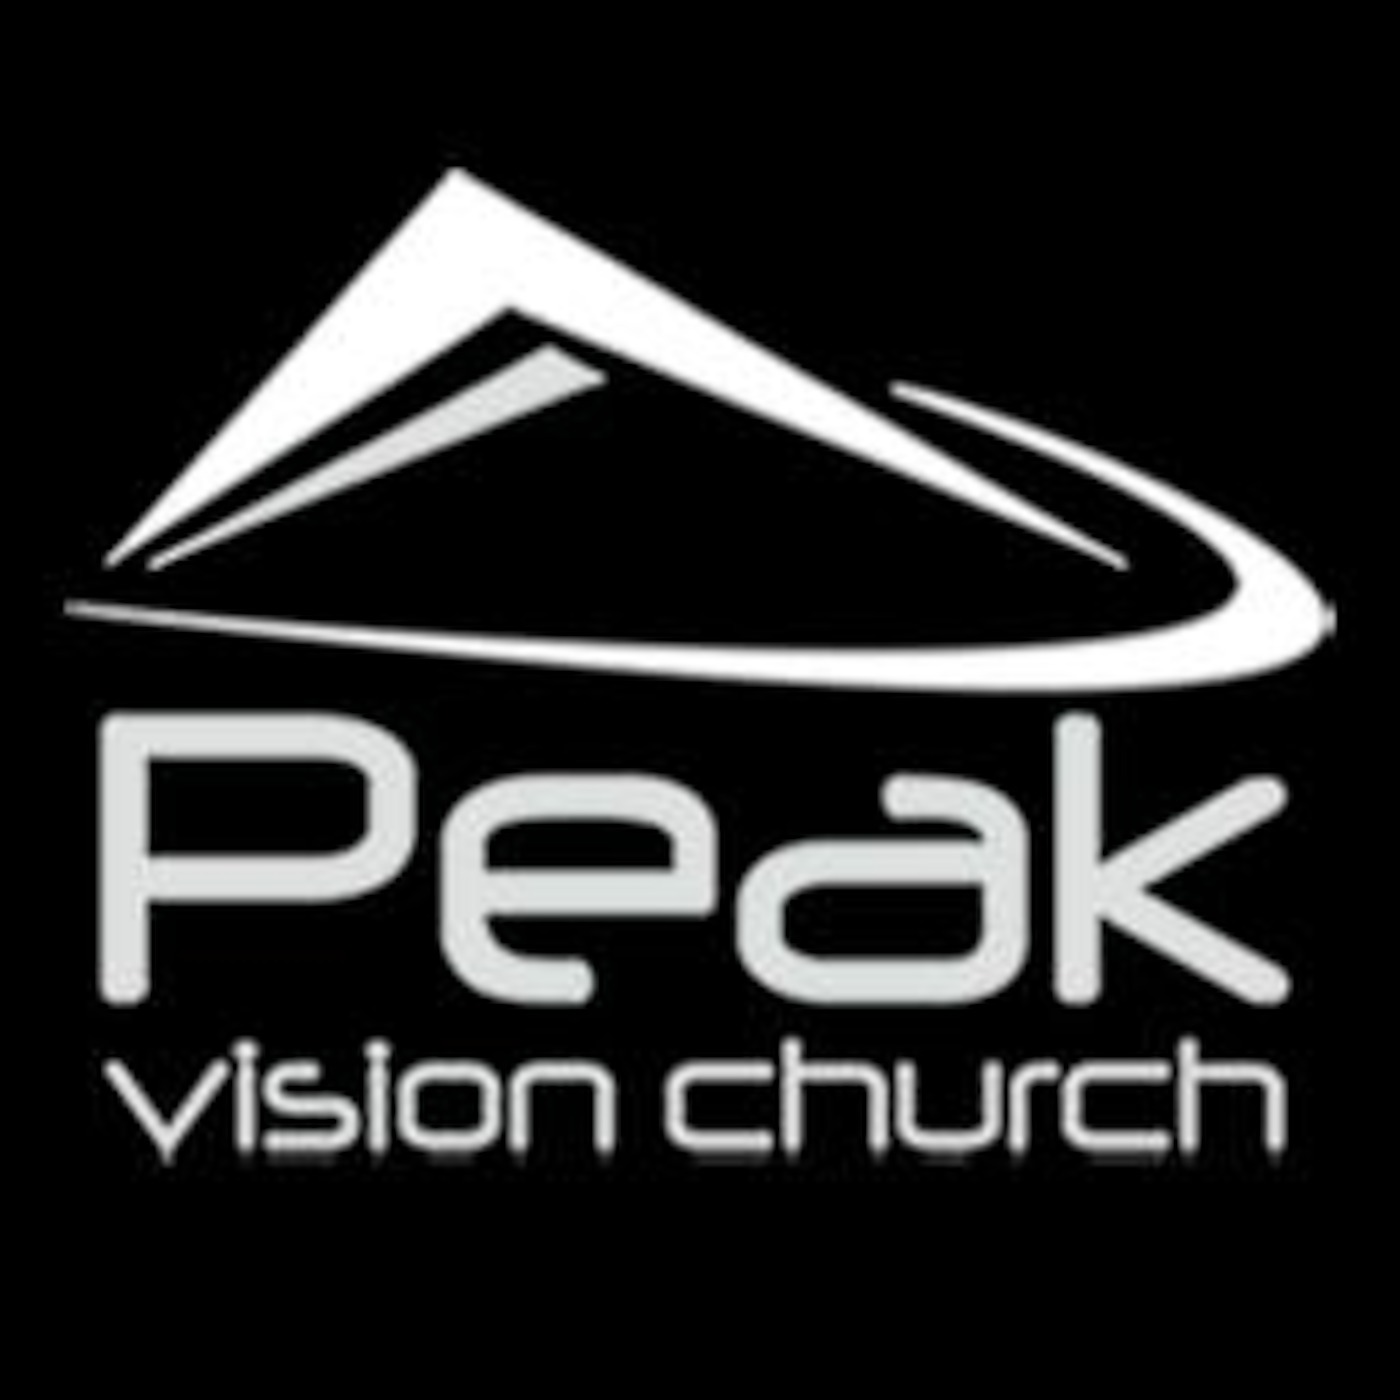 Peak Vision Church